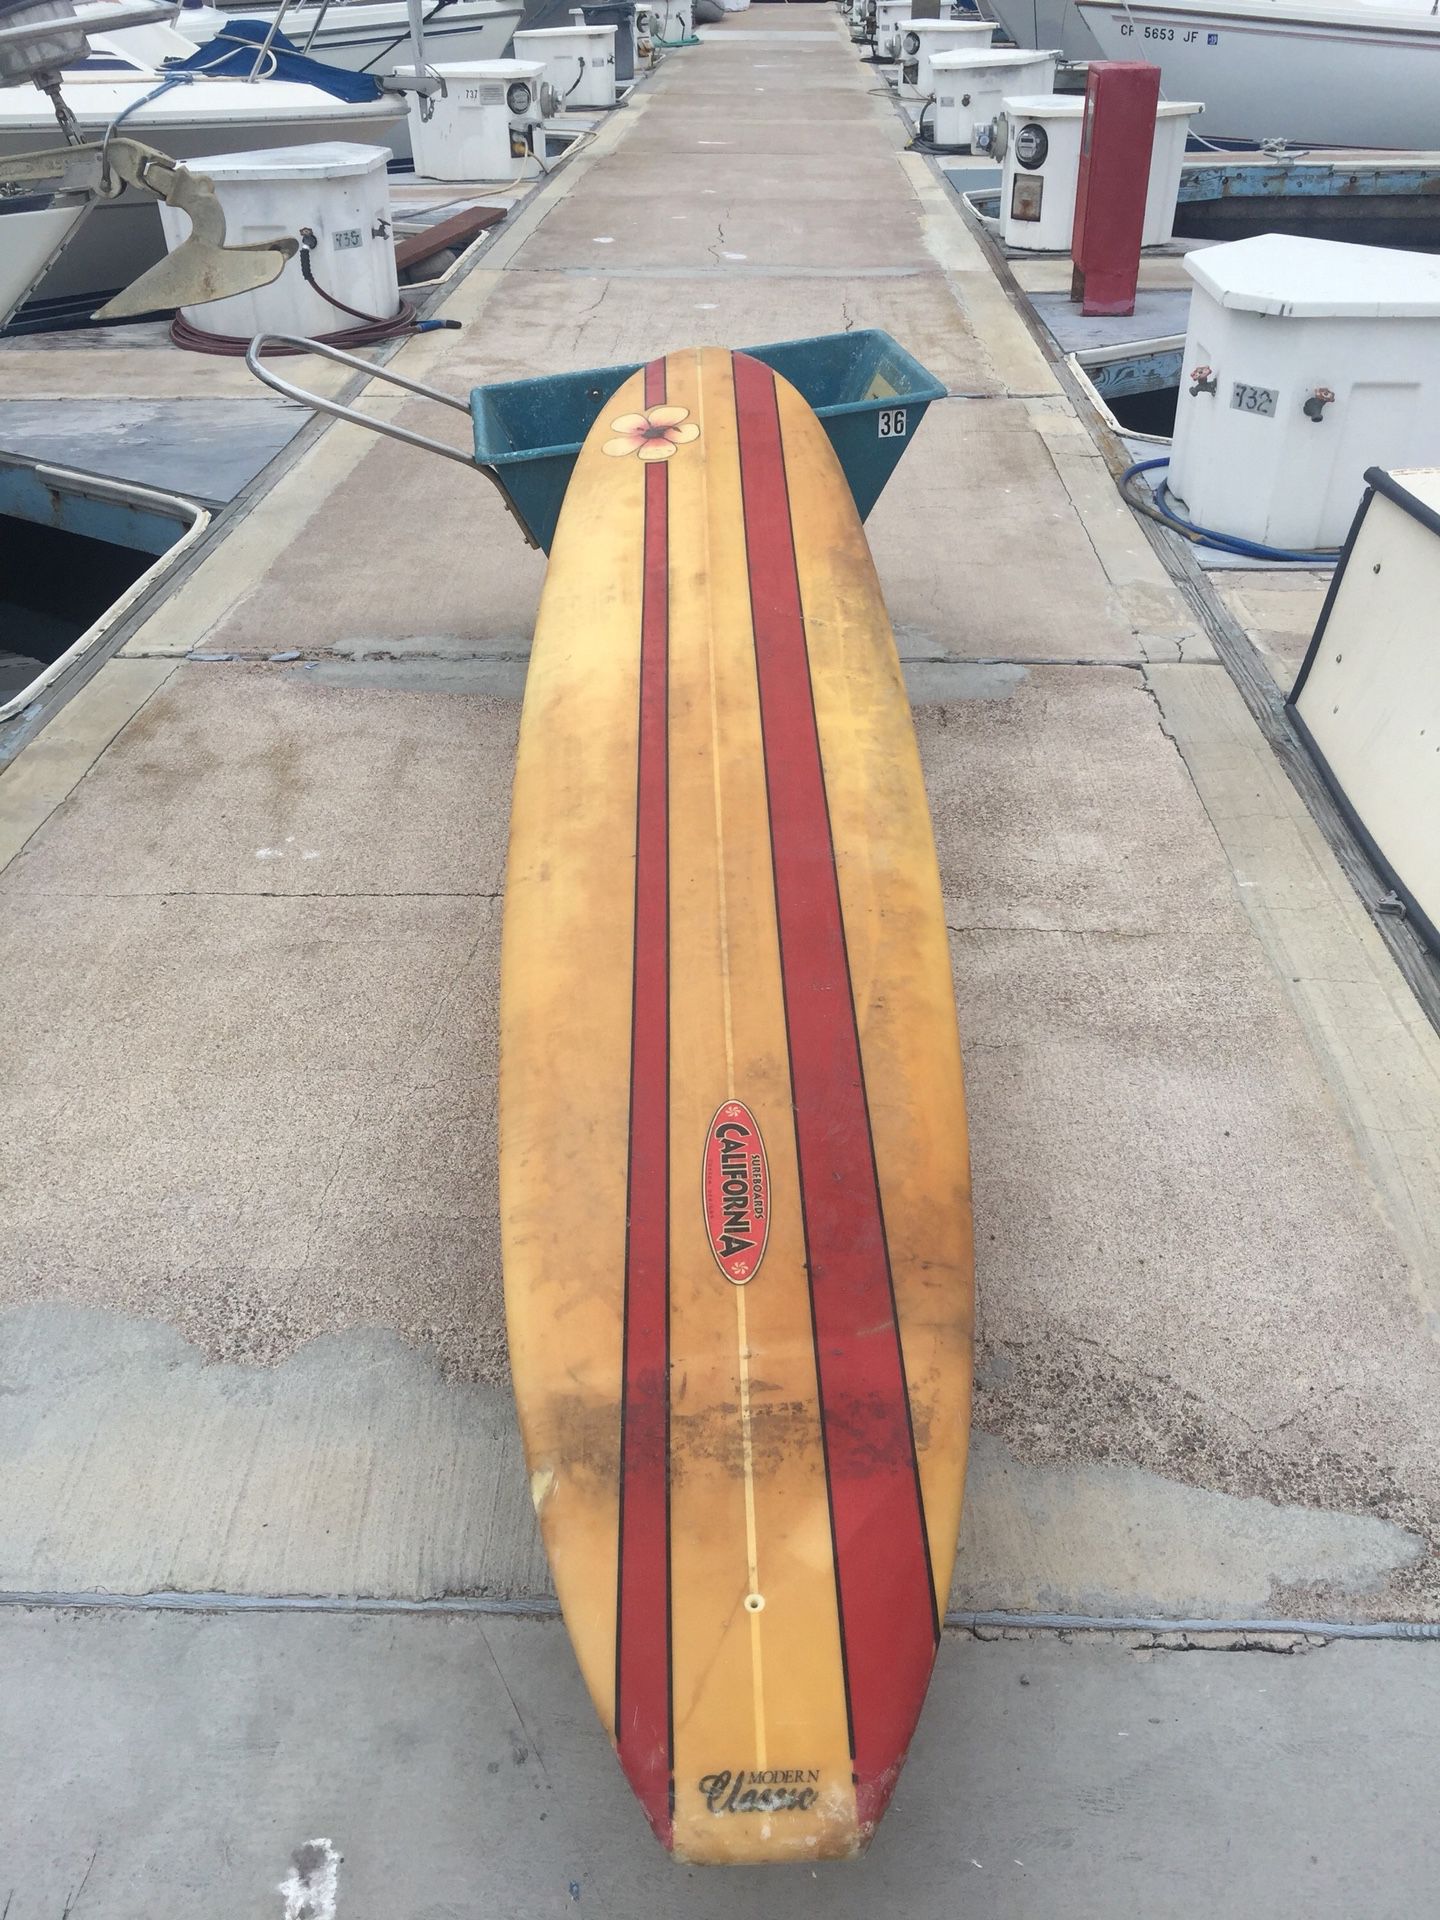 Longboard surfboard 9’ 4”